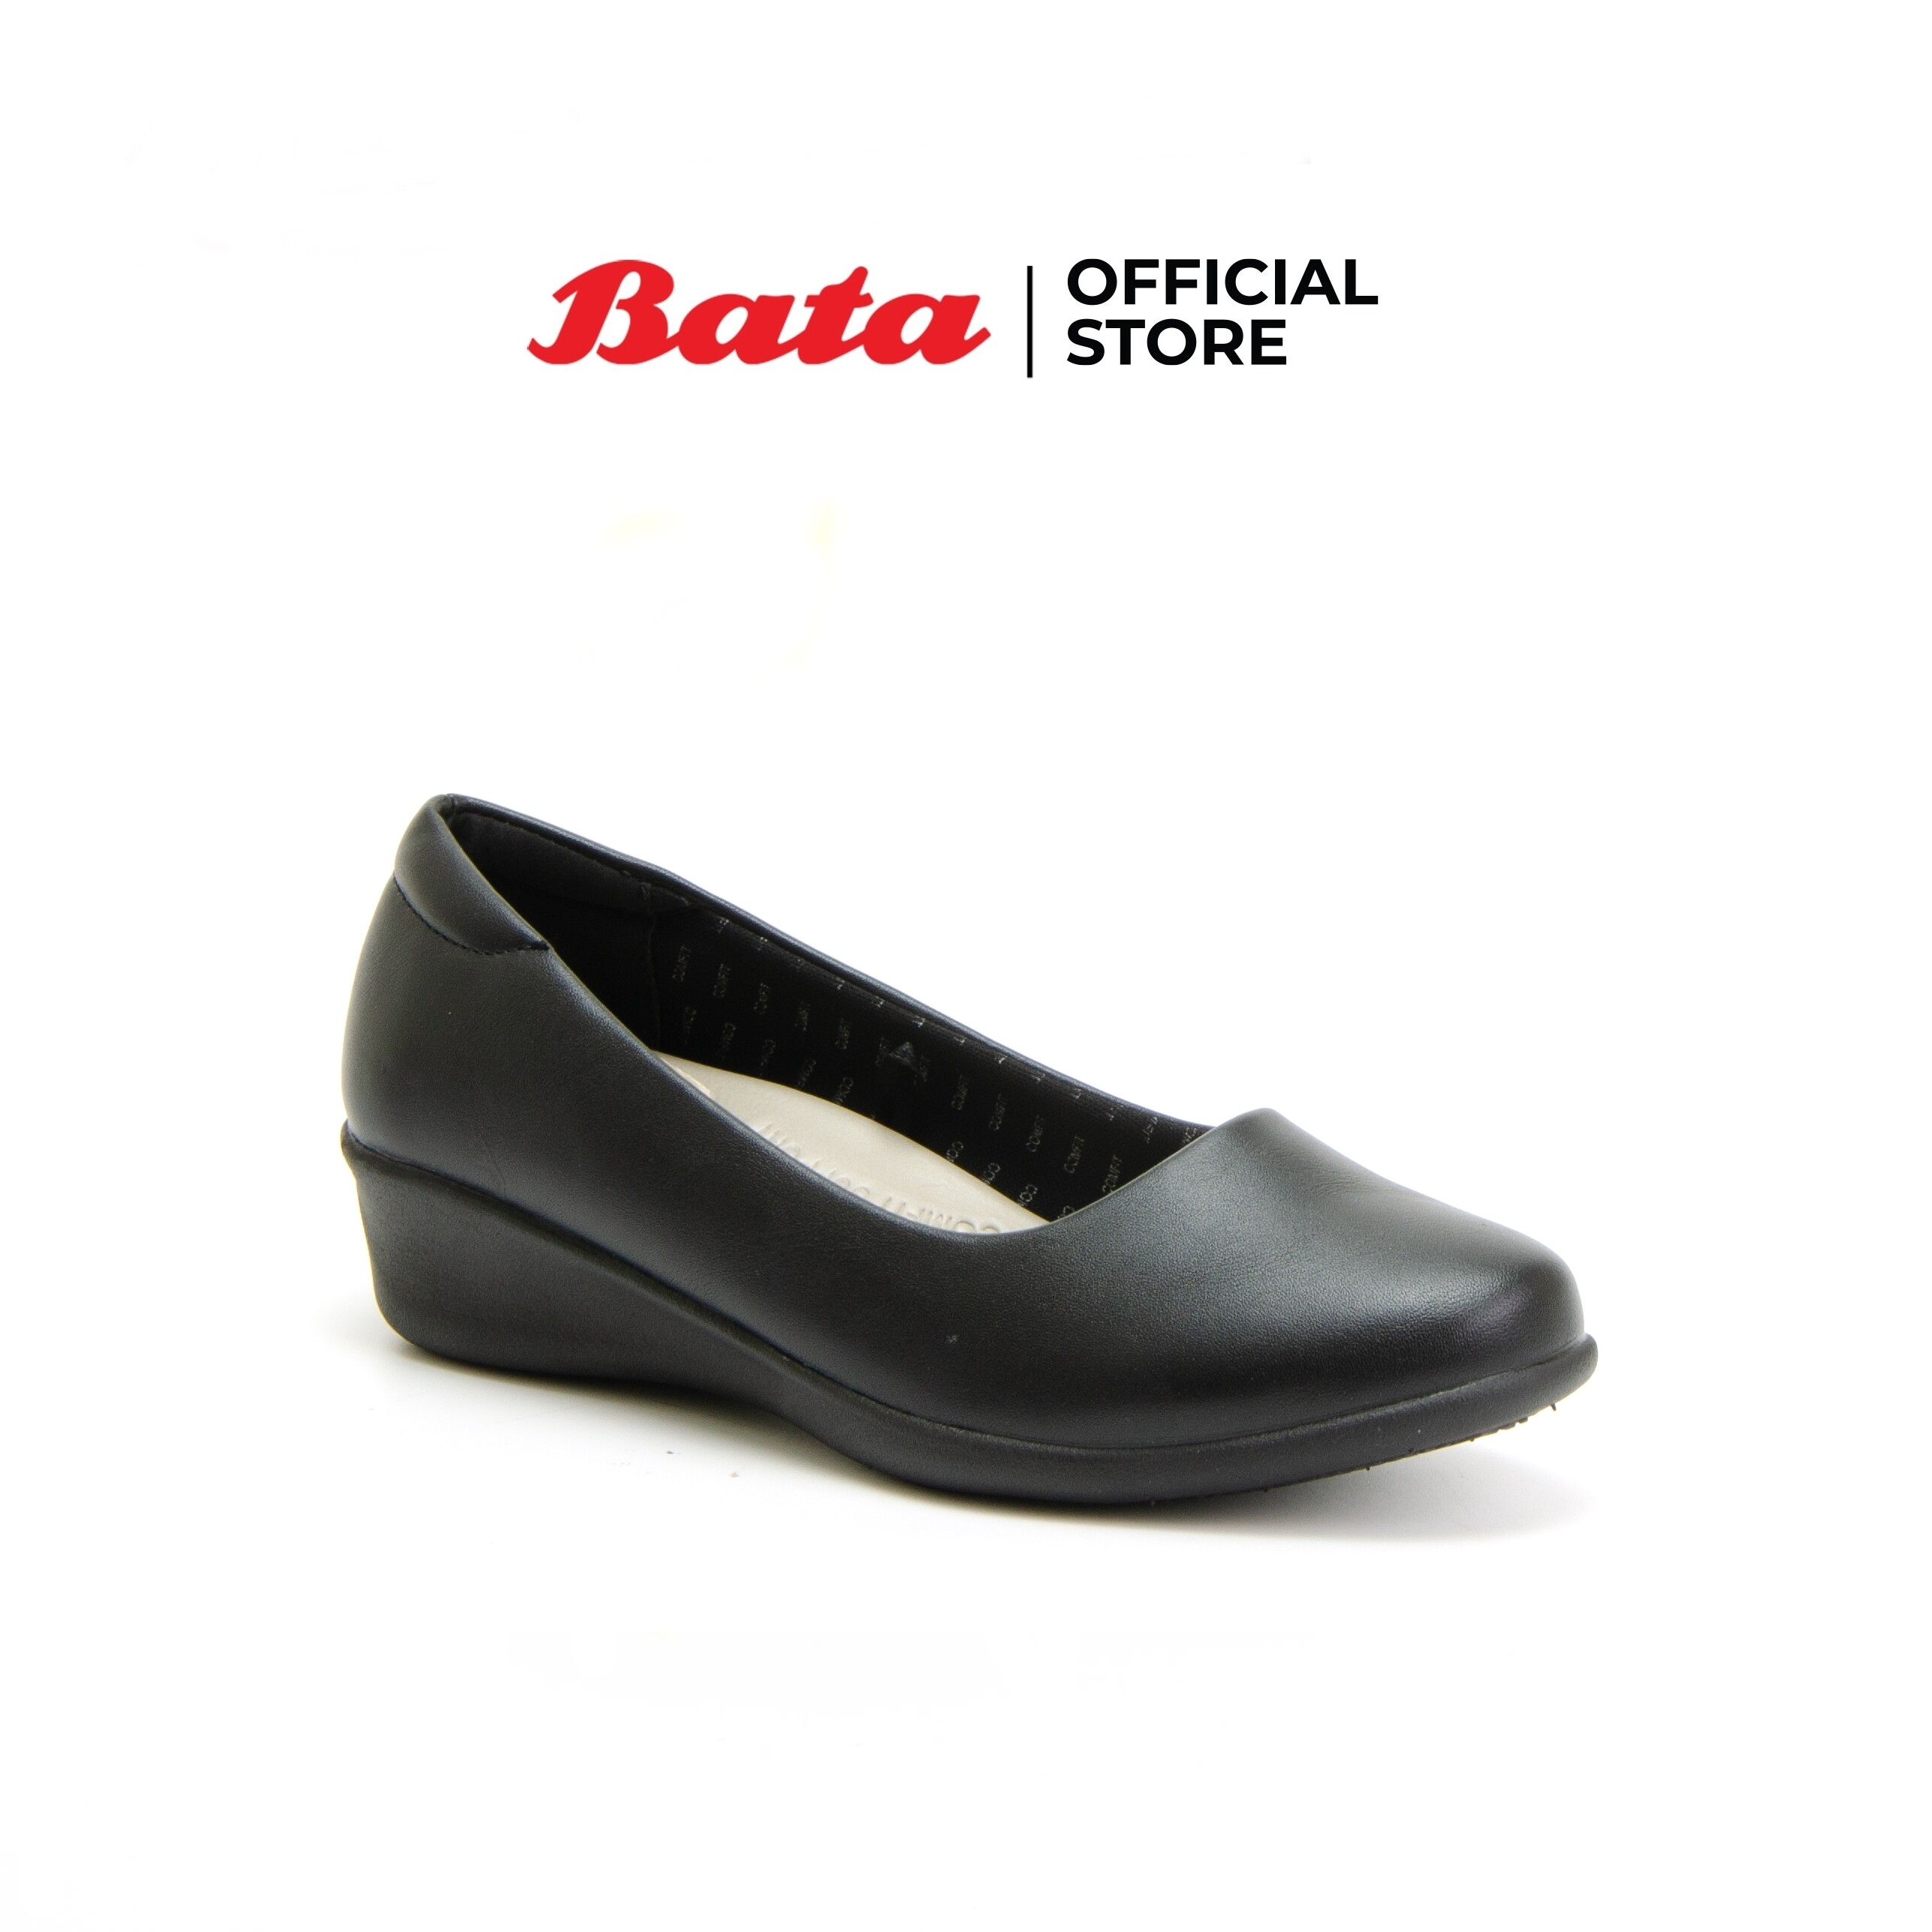 Bata COMFIT รองเท้าลำลองหญิง DRESS แบบสวม ปิดส้น สีดำ รหัส 6516177 Ladiescomfort Fashion